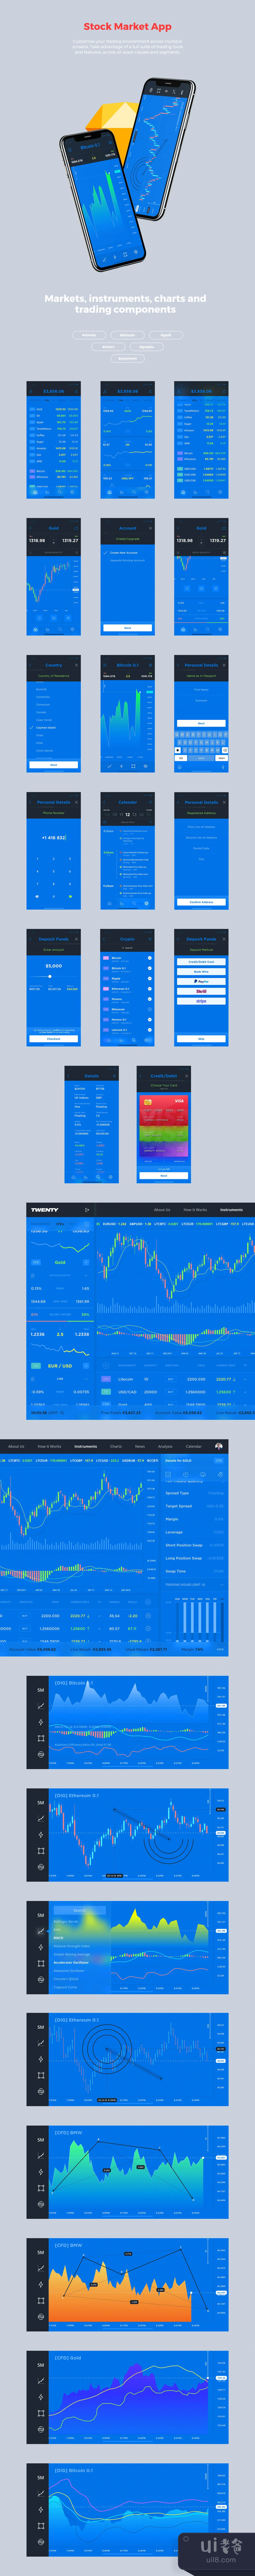 股票市场应用程序UI套件 (Stock Market App UI Kit)插图